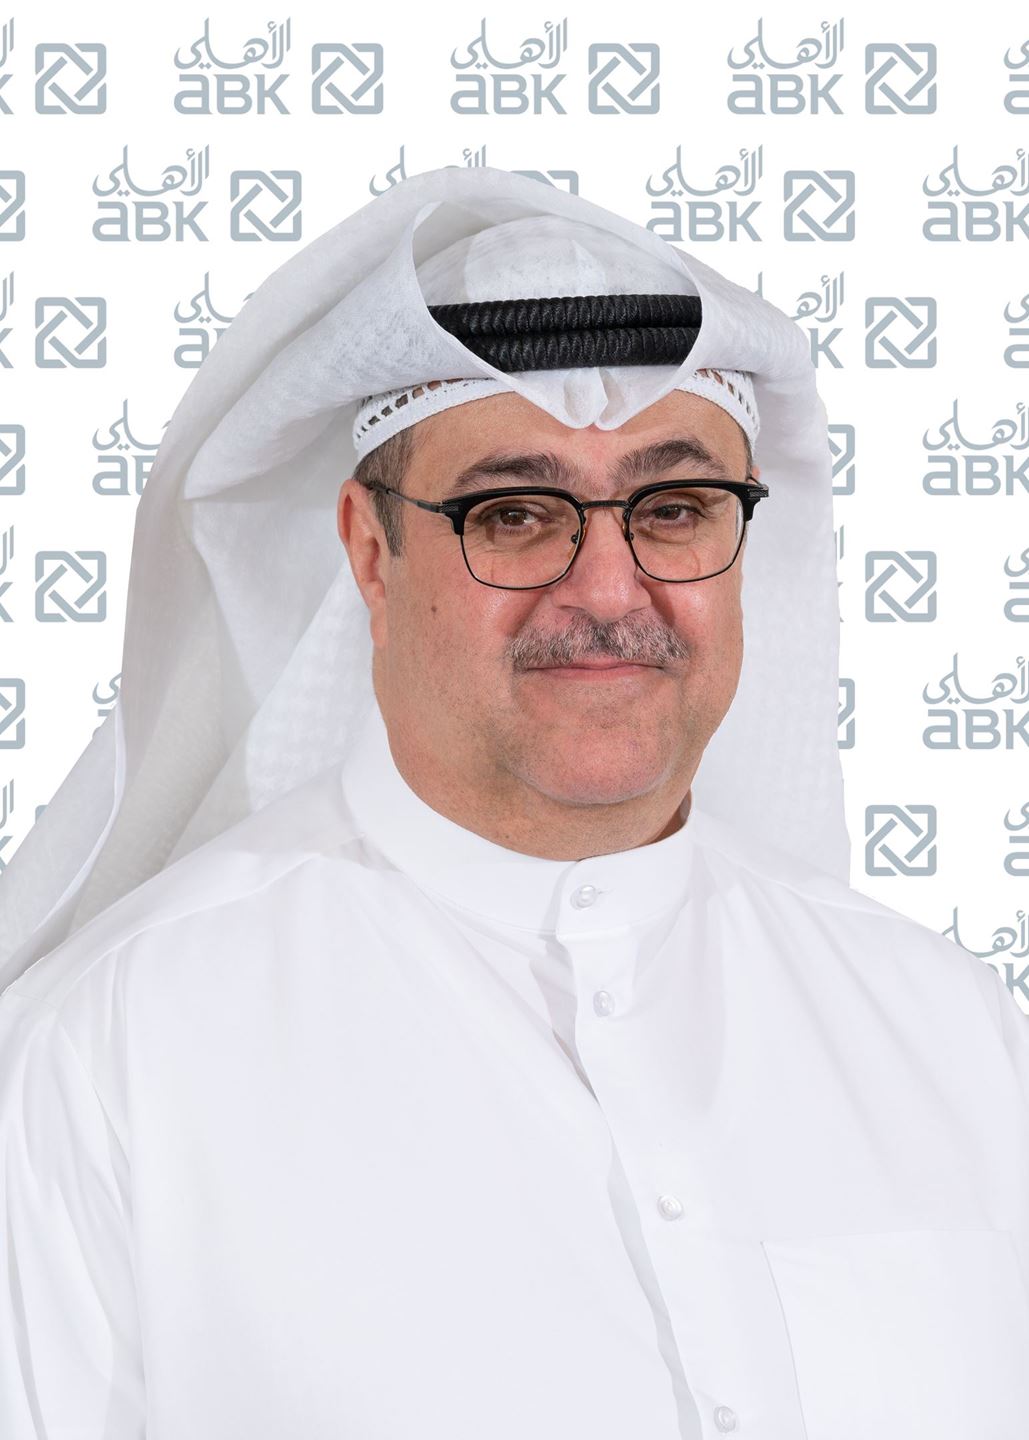 السيد/ لؤي مقامس – الرئيس التنفيذي في البنك الأهلي الكويتي - الكويت